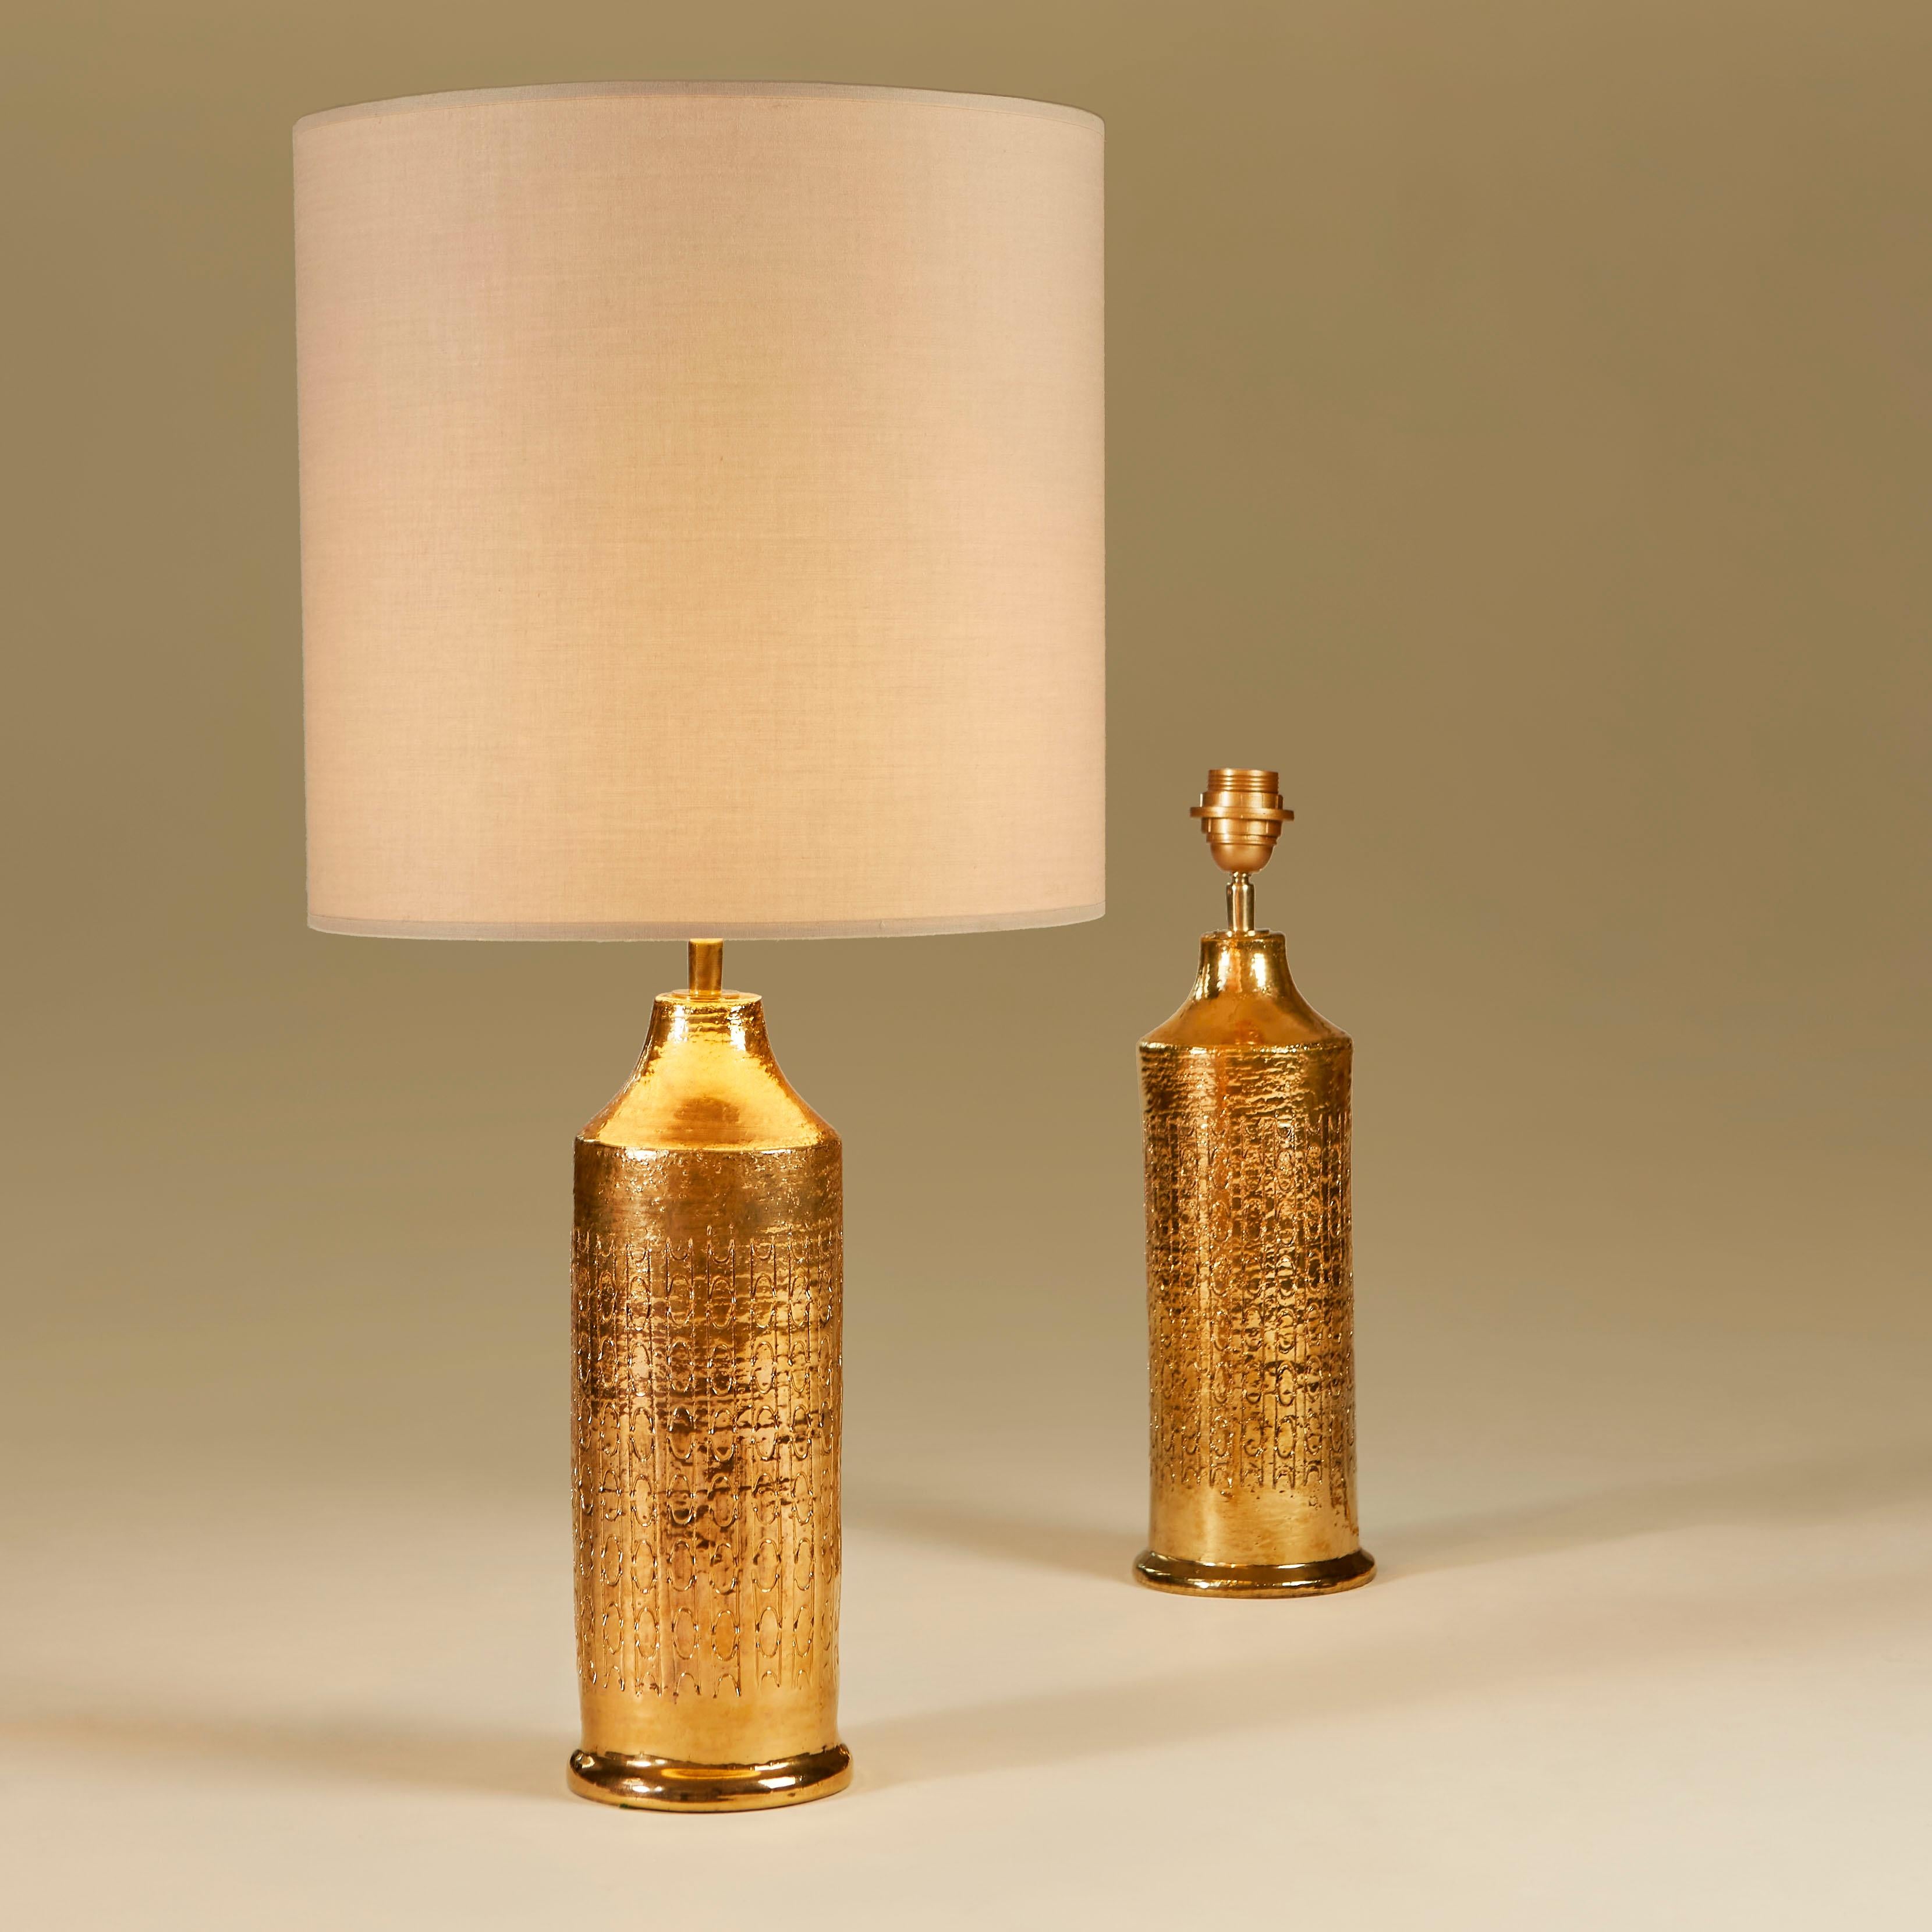 Wunderschönes Paar großer Keramiklampen von Bitossi mit handgeschnittenem dekorativem Muster in reicher Goldglasur.

Die Größe einschließlich des Schirms beträgt 73,5 cm Höhe und 35 cm Durchmesser.